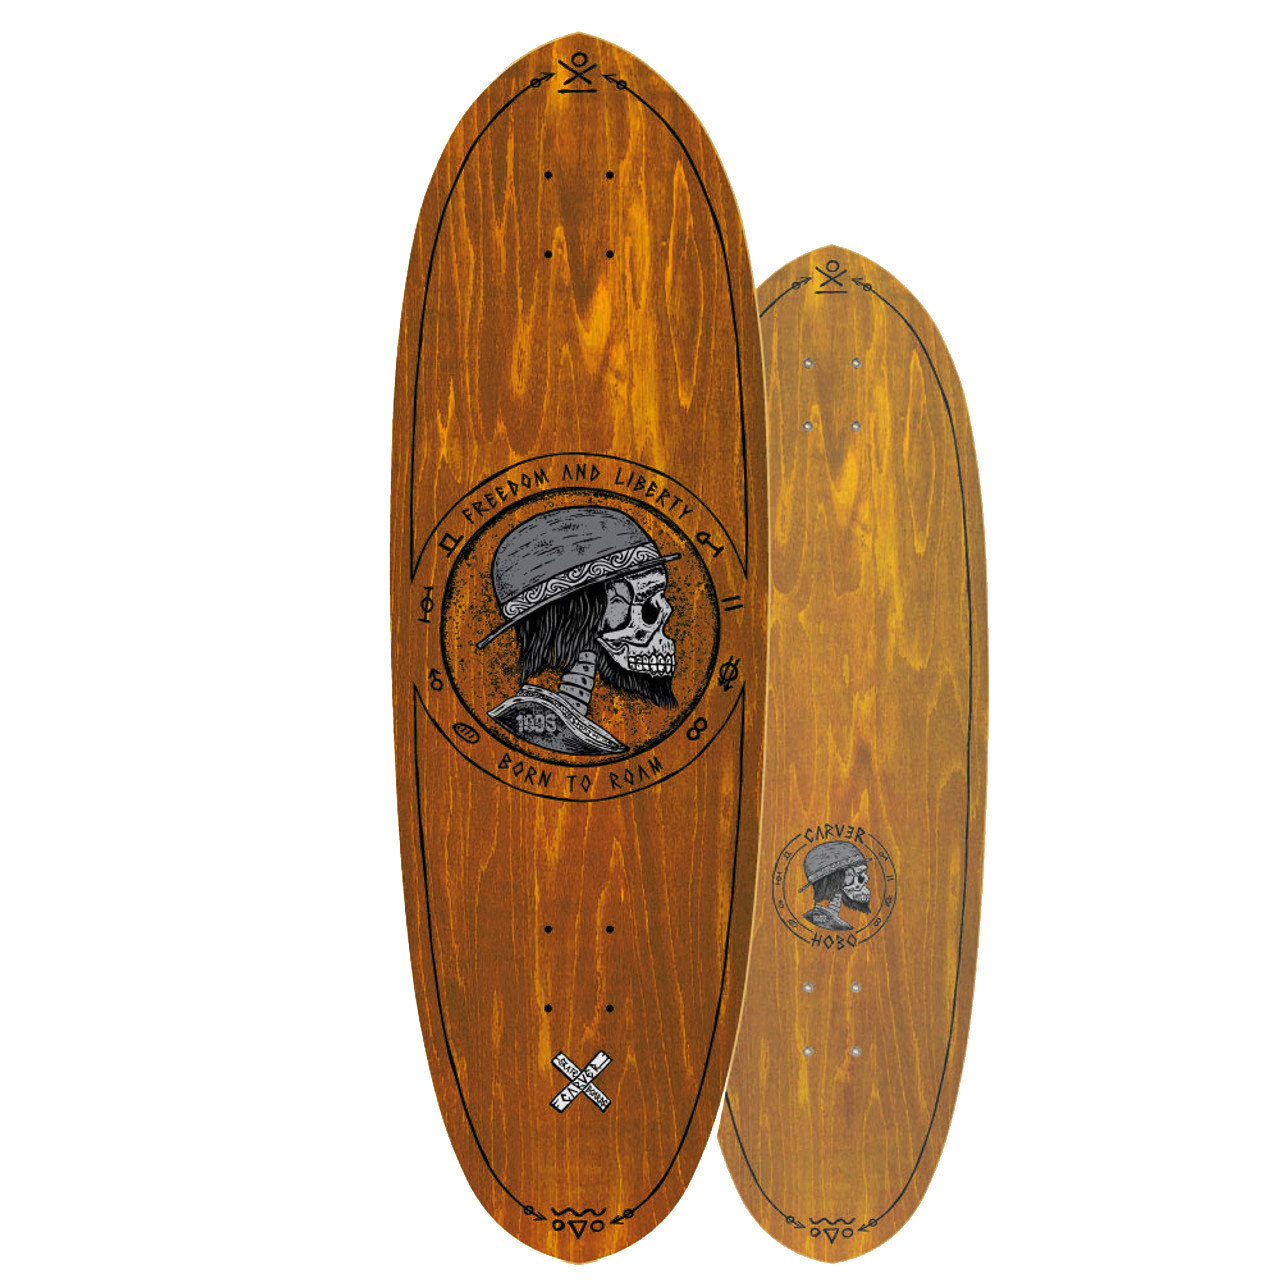 Which Carver Skateboard Should I Choose?